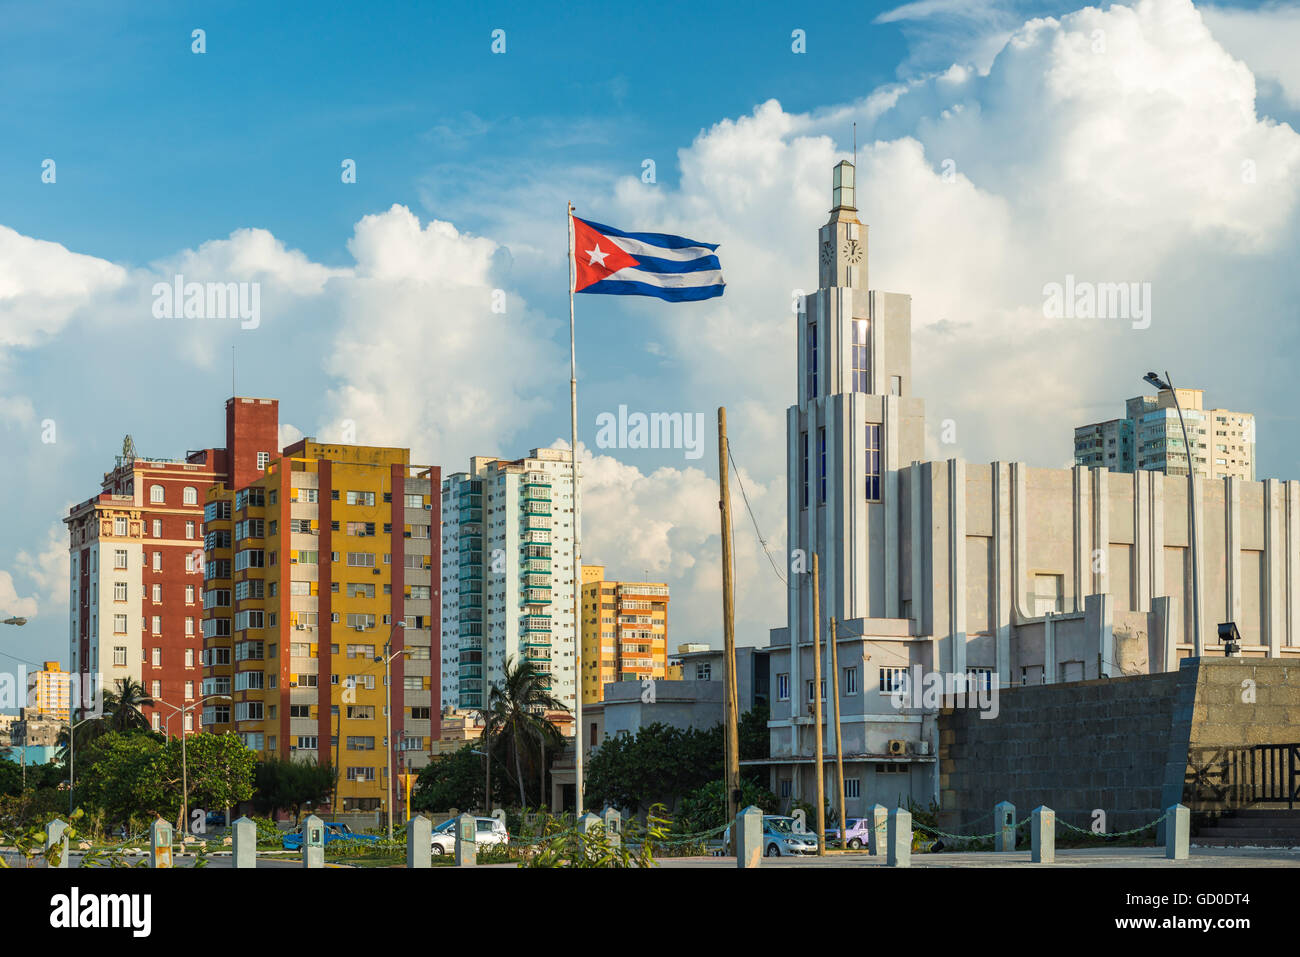 Un drapeau flotte au-dessus des rues de la quartier Vedado à La Havane, Cuba. Banque D'Images